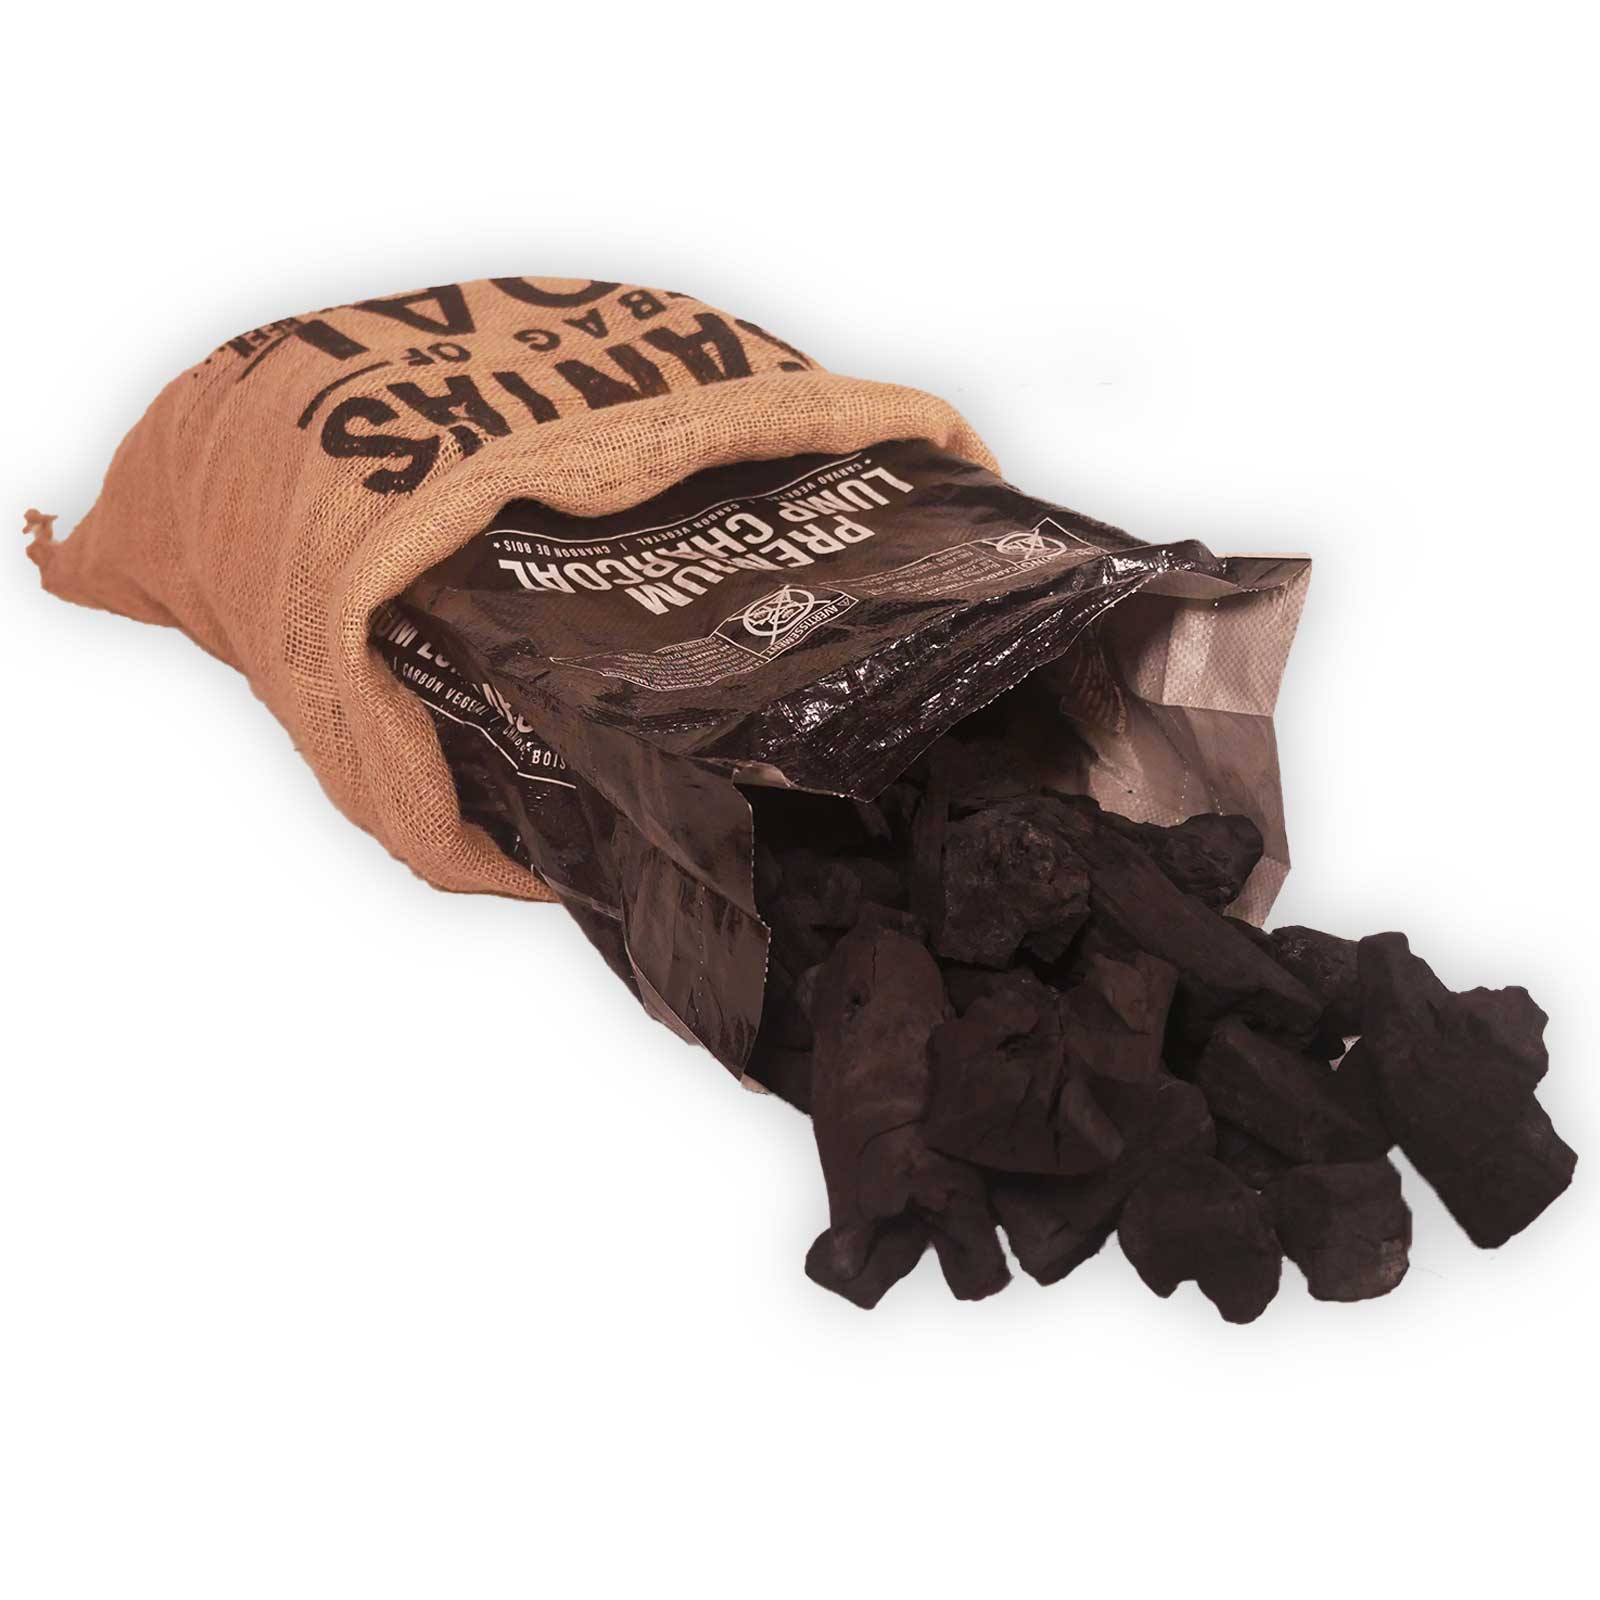 Santa Bag of Coal bundle with Premium Black Bag